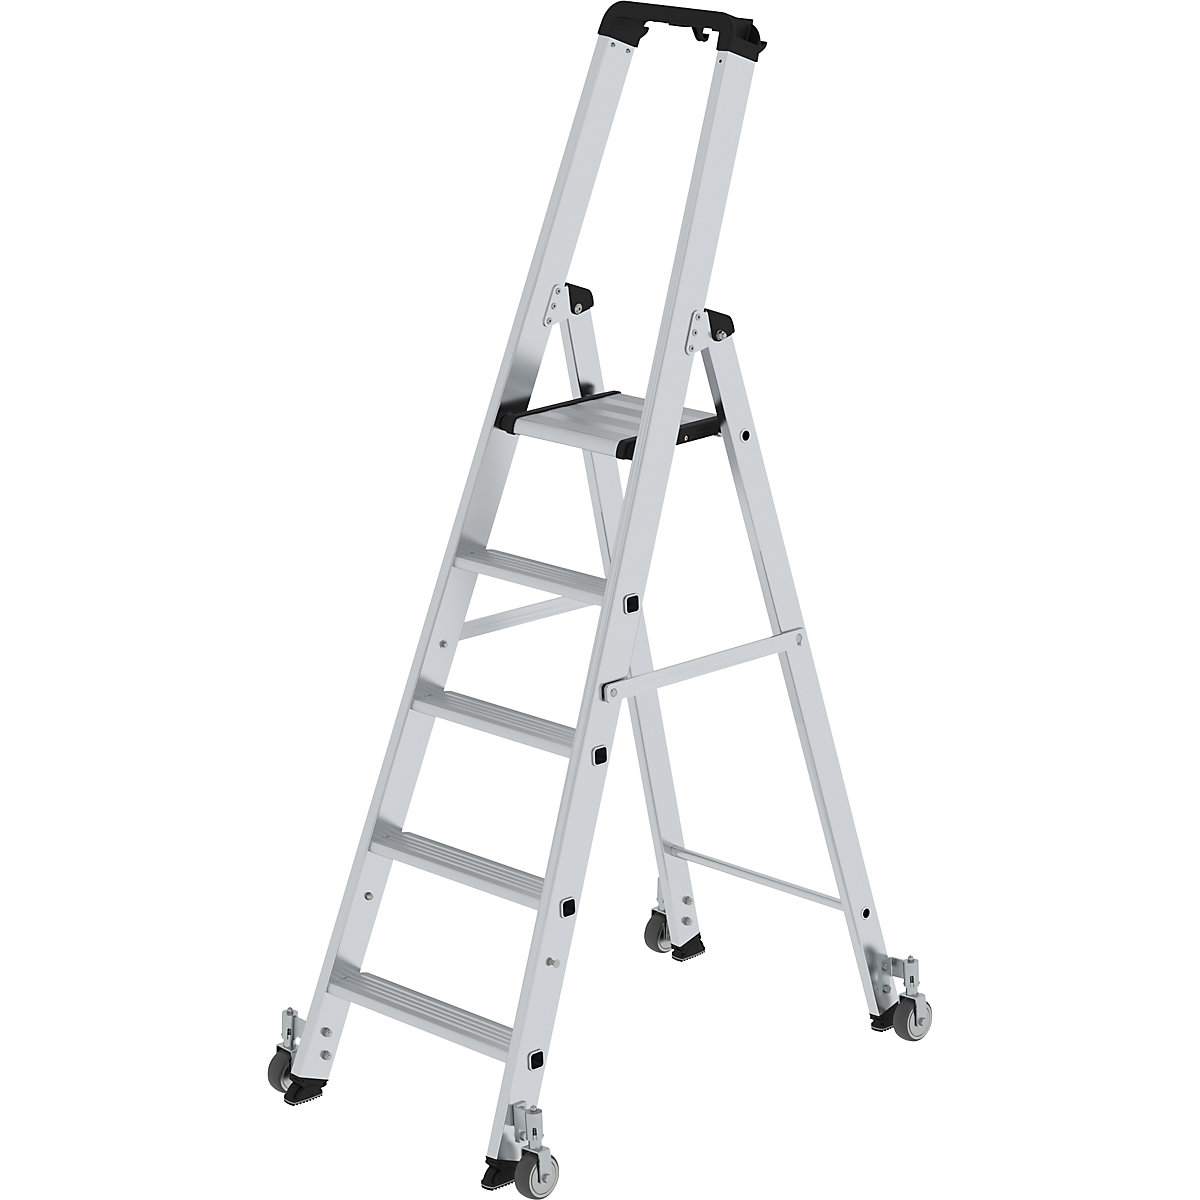 Step ladder, single sided – MUNK, mobile model, 5 steps, platform height 1170 mm-11